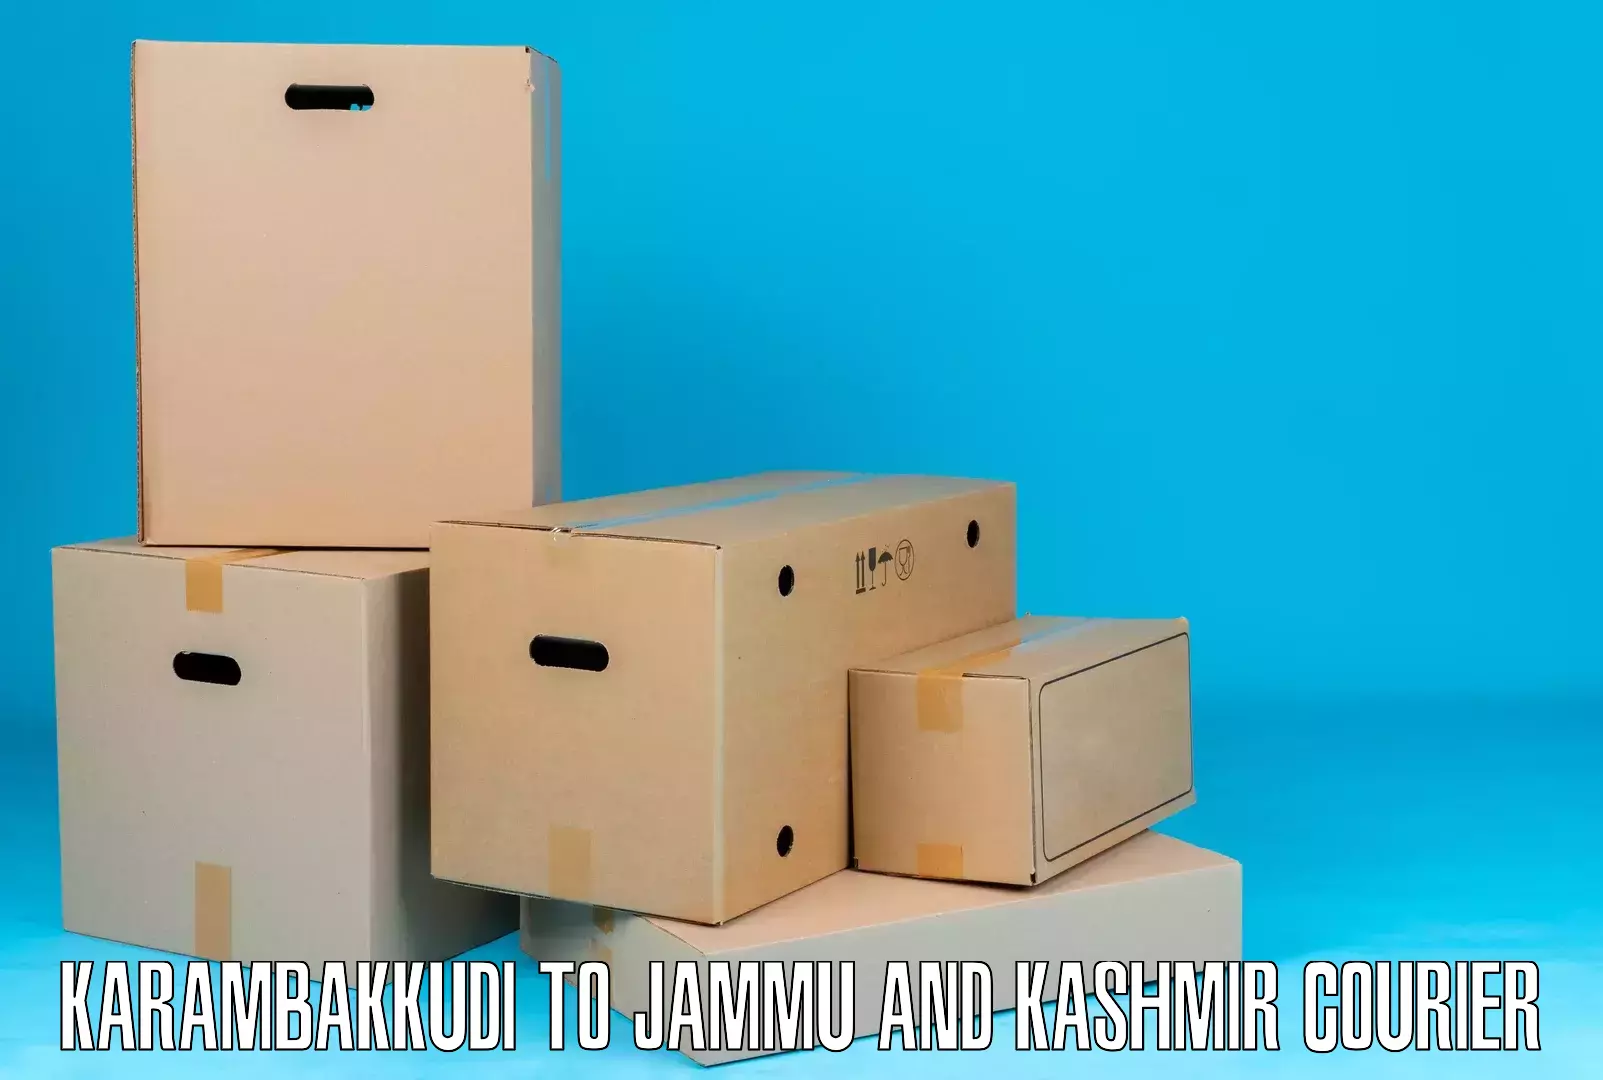 Expedited shipping methods in Karambakkudi to Jakh